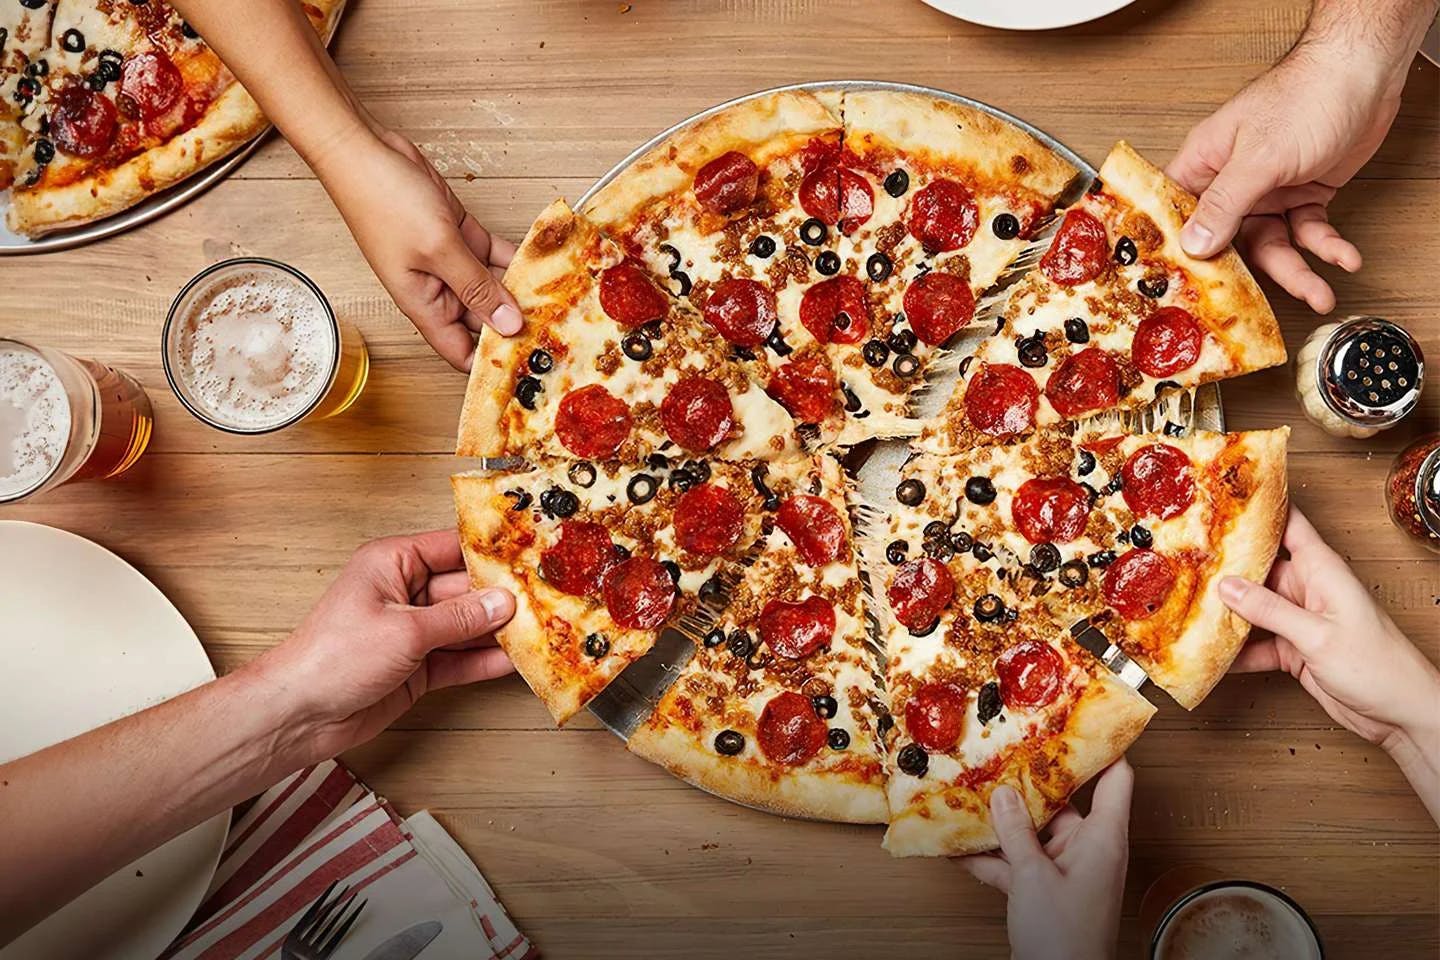 Ferrara Pizza & Pasta - Lamberton Blvd in Orlando - Highlight